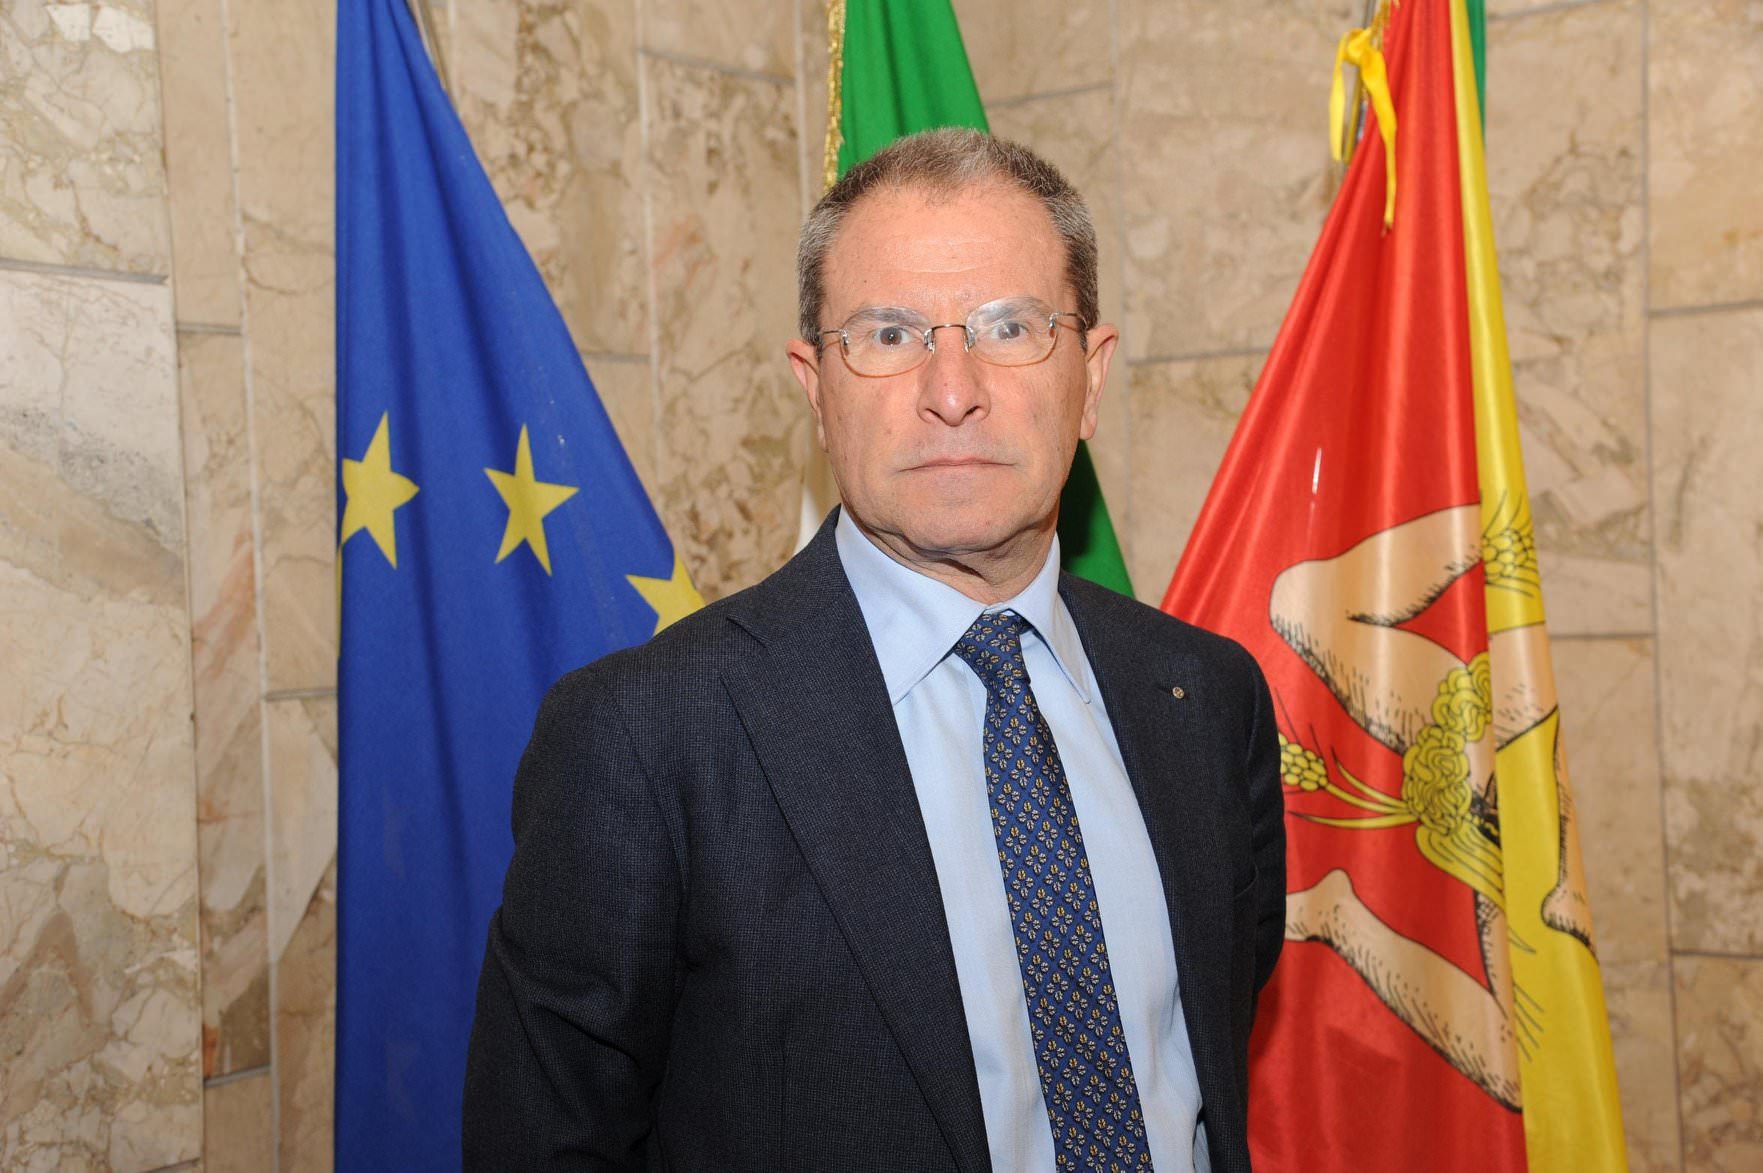 Cambio alla Regione Siciliana: Antonio Scavone è il nuovo assessore regionale alla Famiglia